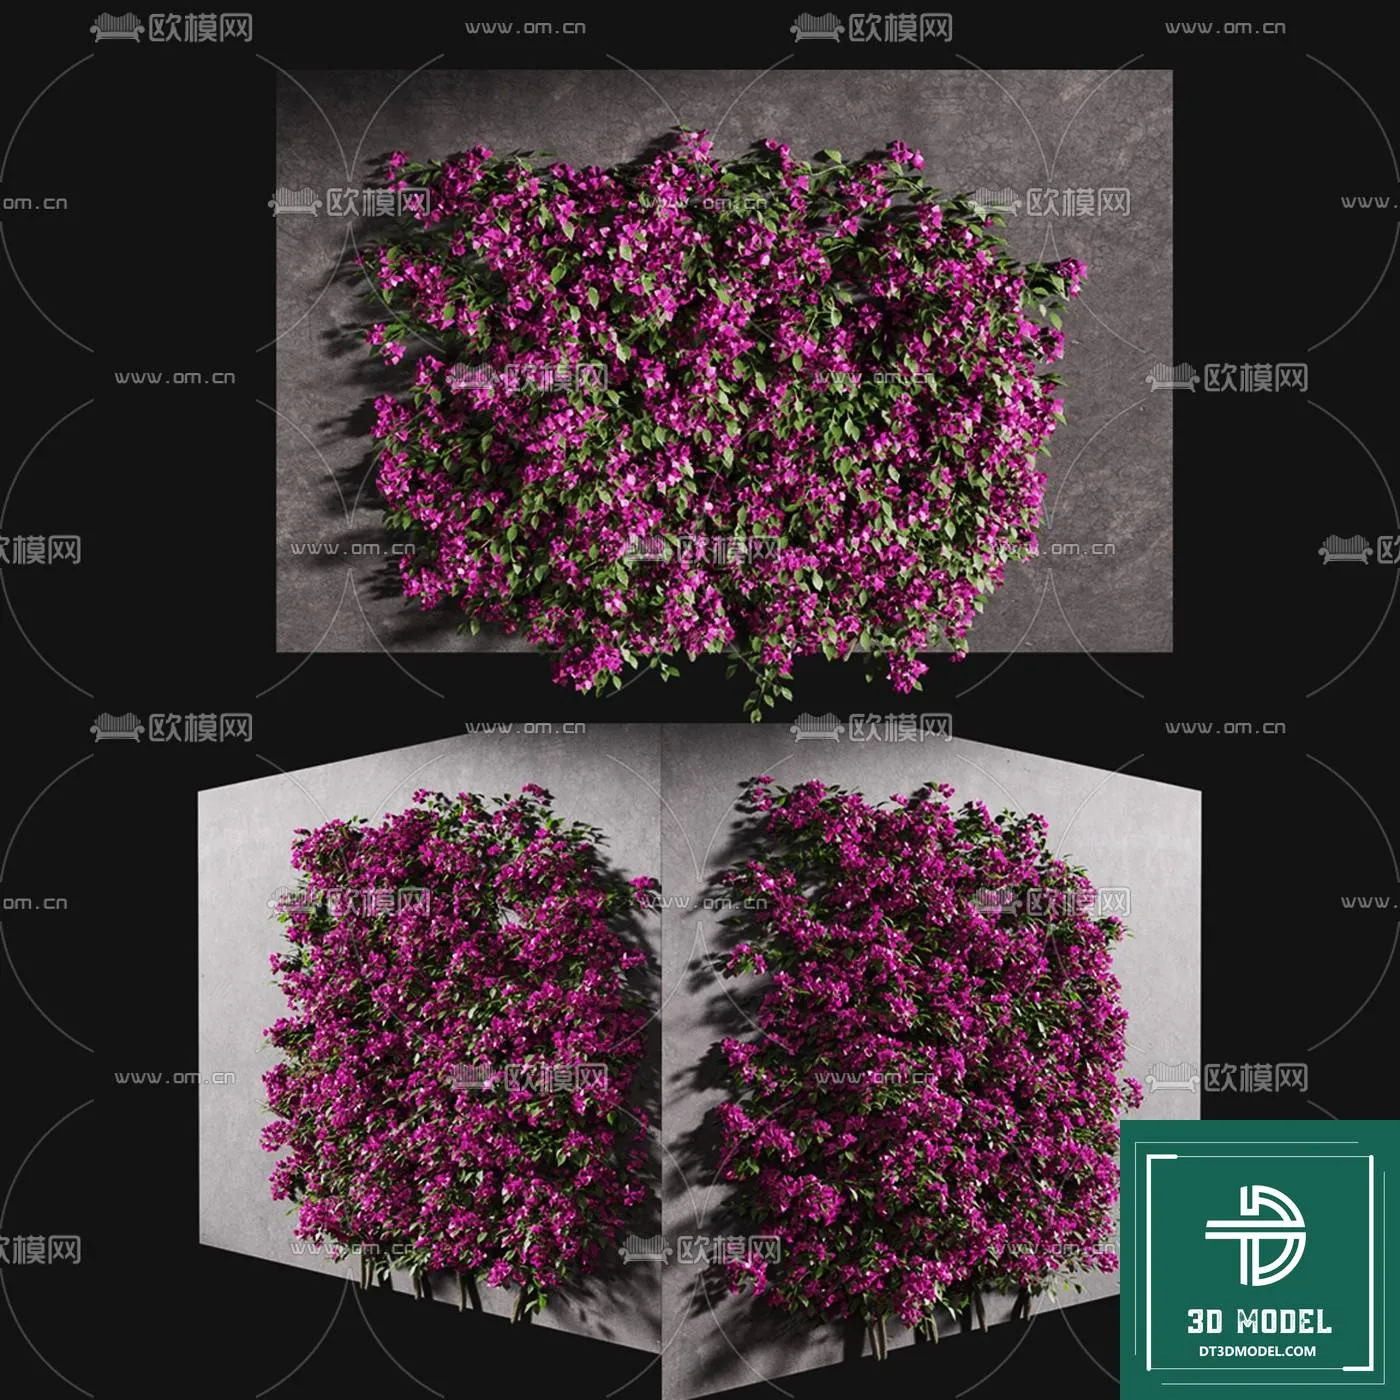 VERTICAL GARDEN – FITOWALL PLANT 3D MODEL – 018